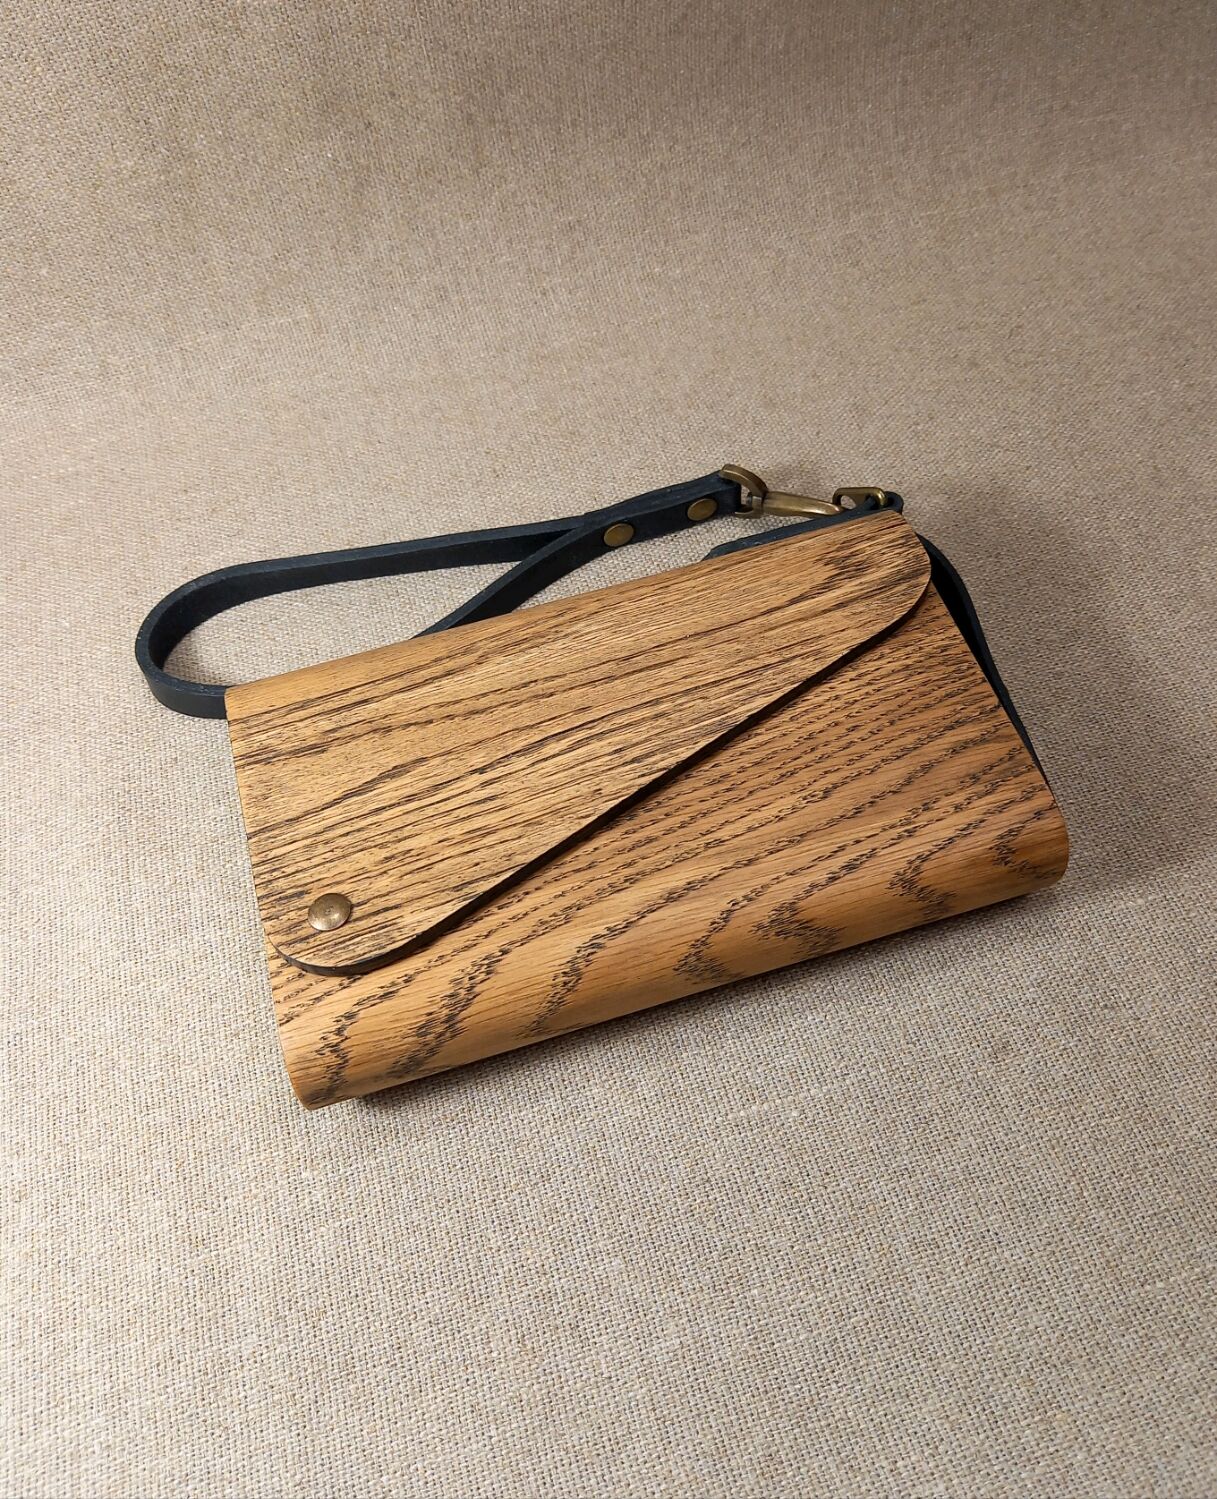 Деревянная сумка